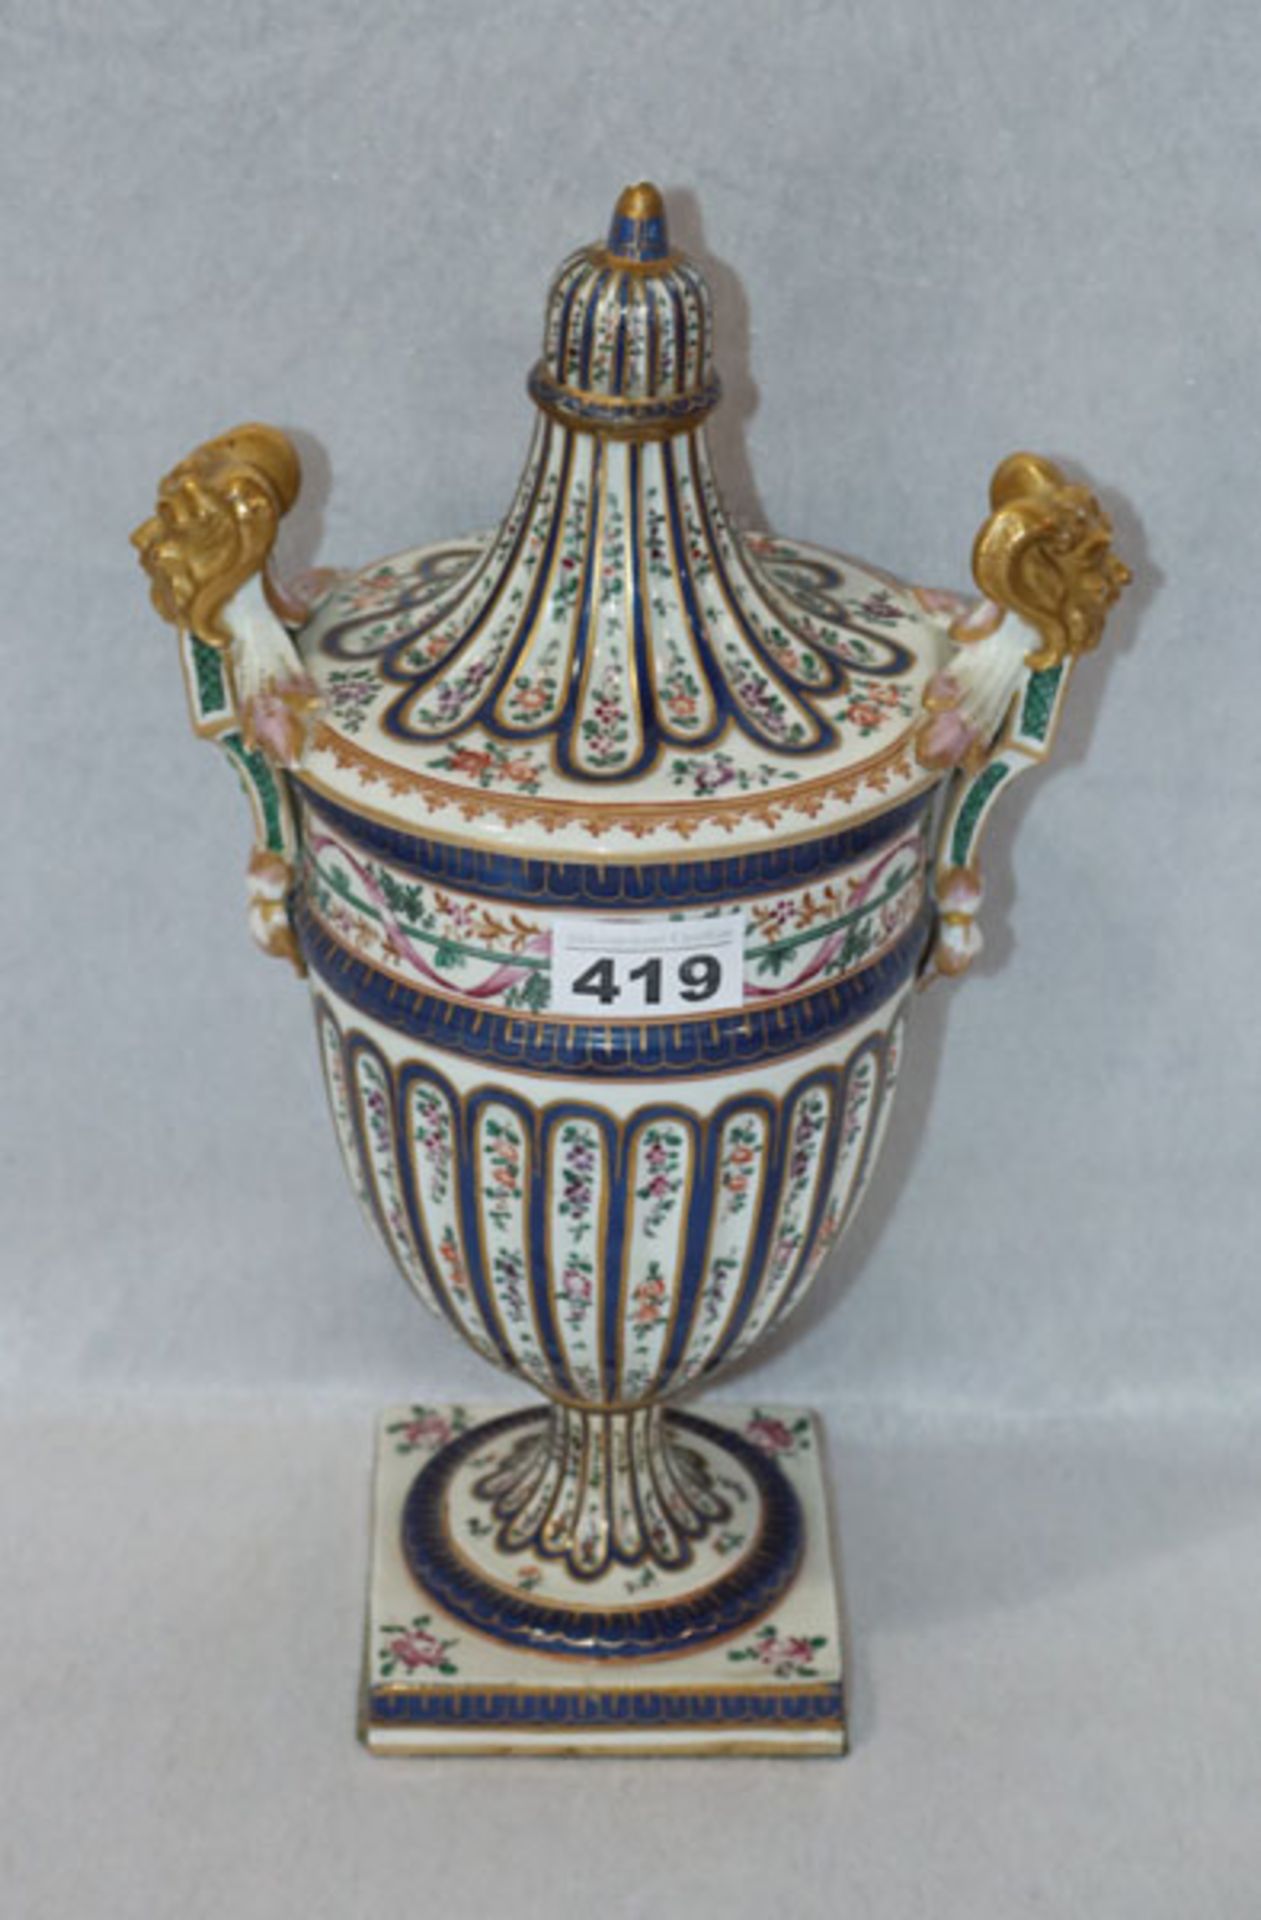 Chinsesische Porzellan Deckelvase mit seitlichen Handhaben, Blumen- und Golddekor, H 34,5 cm, B 21